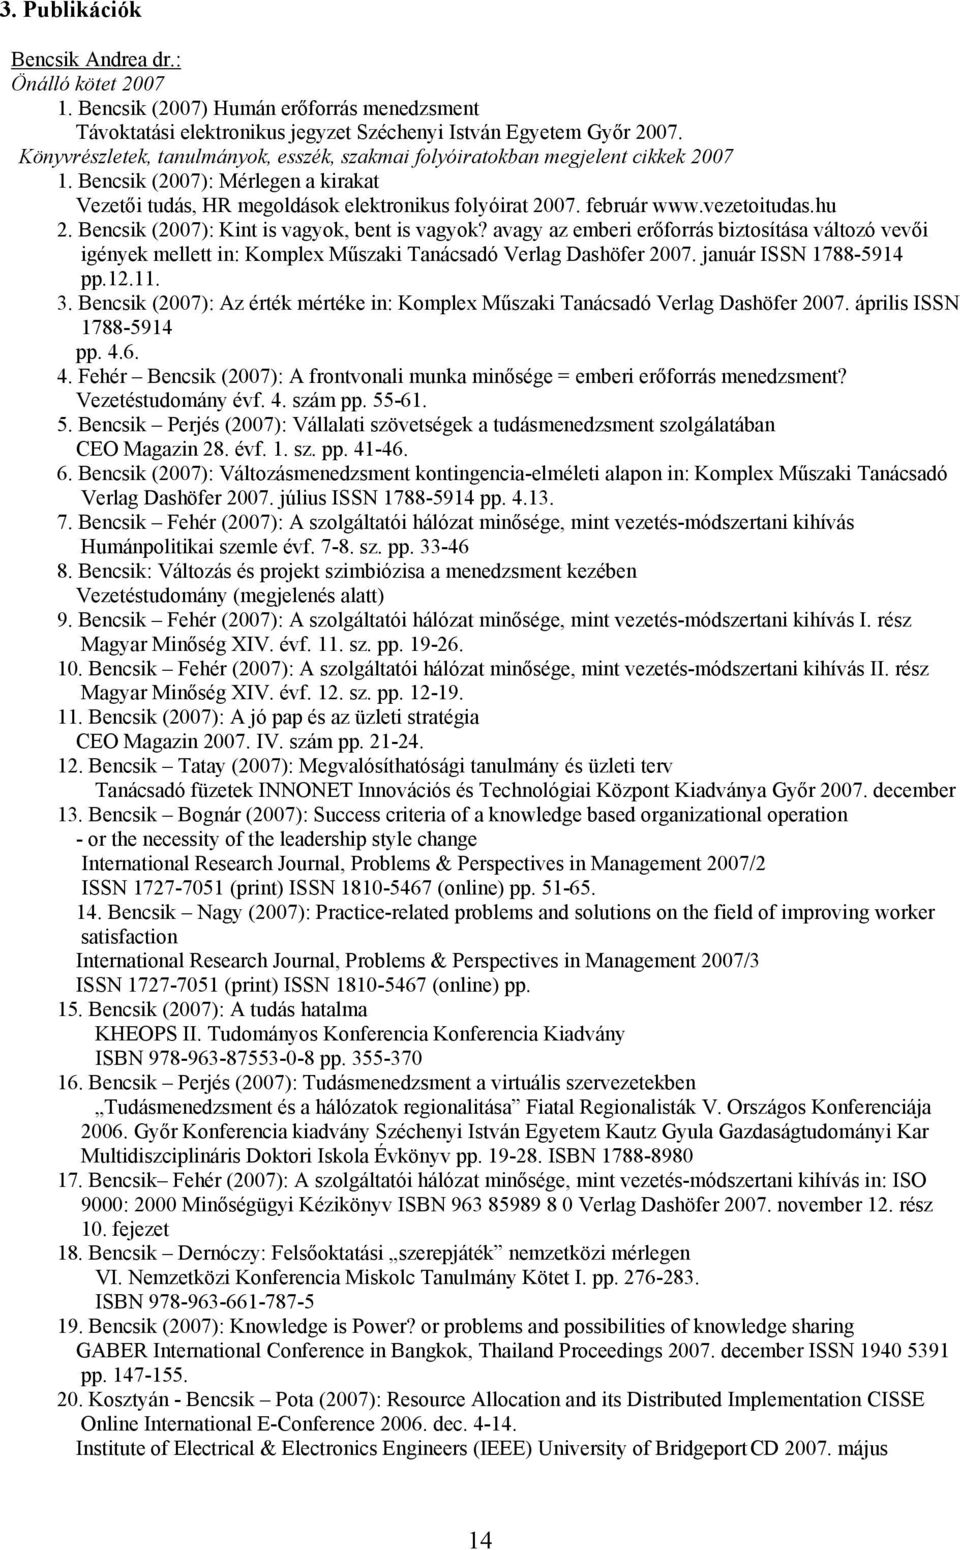 január ISSN 1788-5914 pp.12.11. 3. Bencsik (2007): Az érték mértéke in: Komplex Műszaki Tanácsadó Verlag Dashöfer 2007. április ISSN 1788-5914 pp. 4.